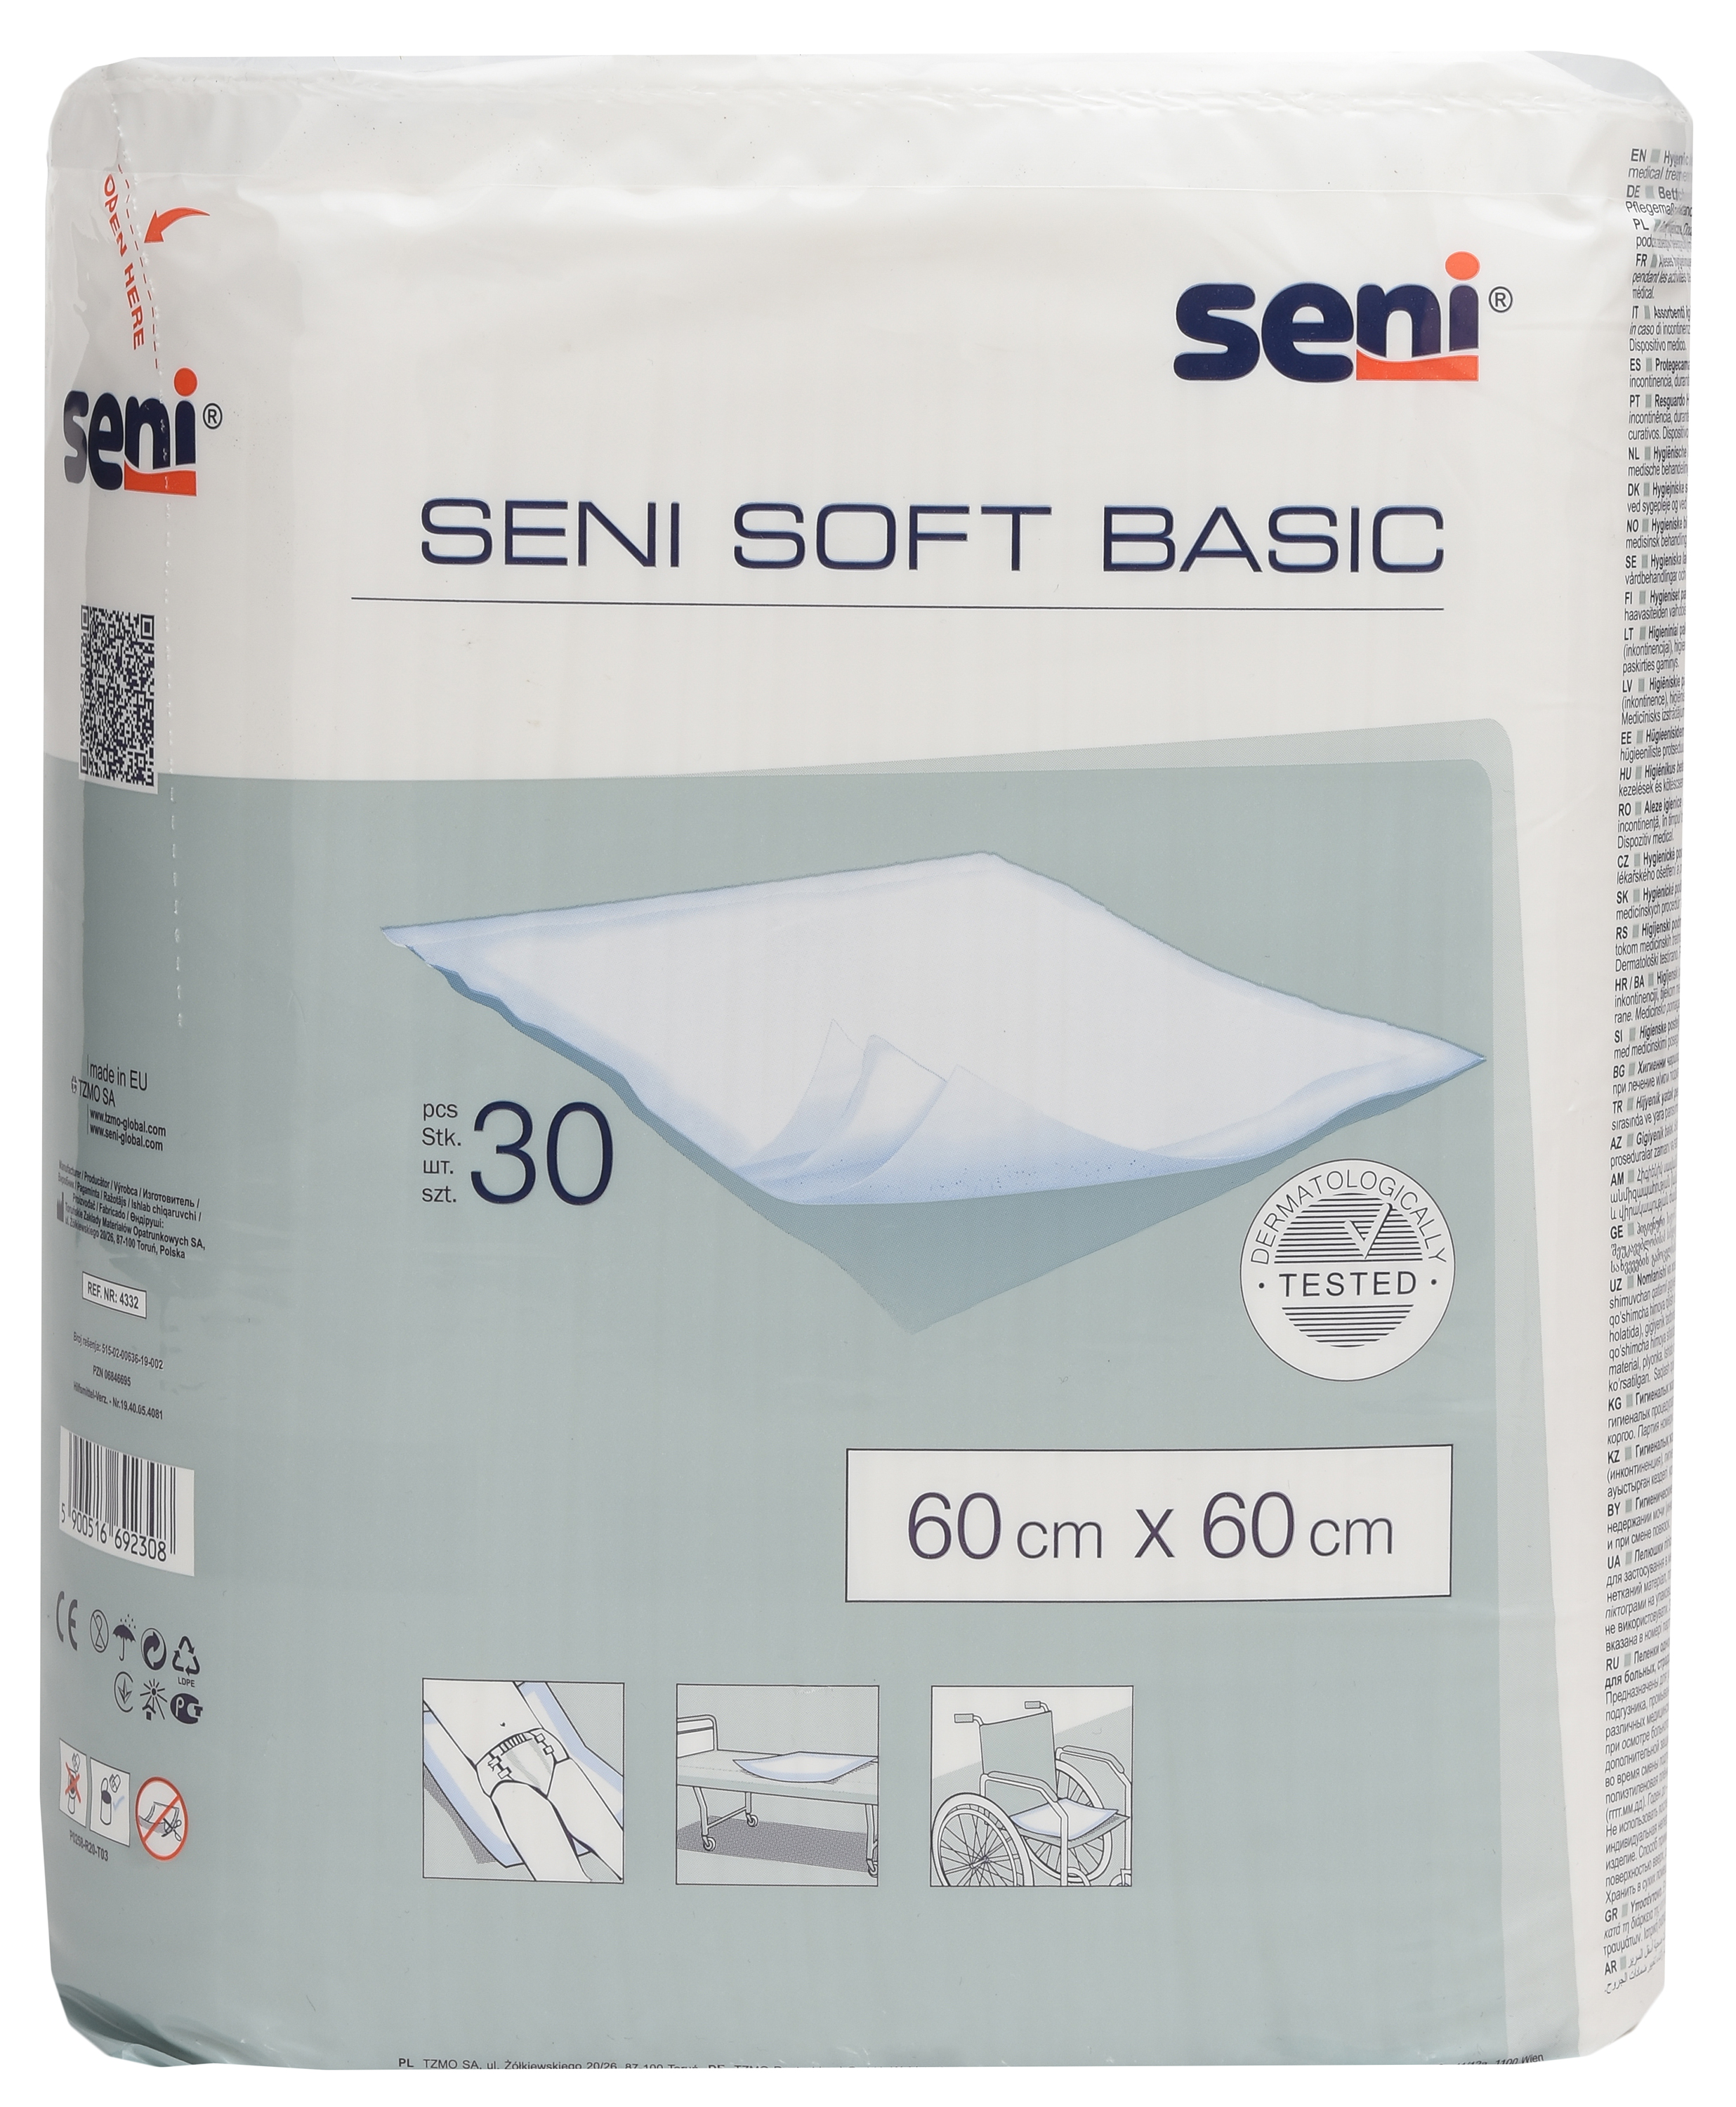 Акция на Одноразовые пеленки Seni Soft Basic 60х60 см 30 шт (5900516692308) от Rozetka UA